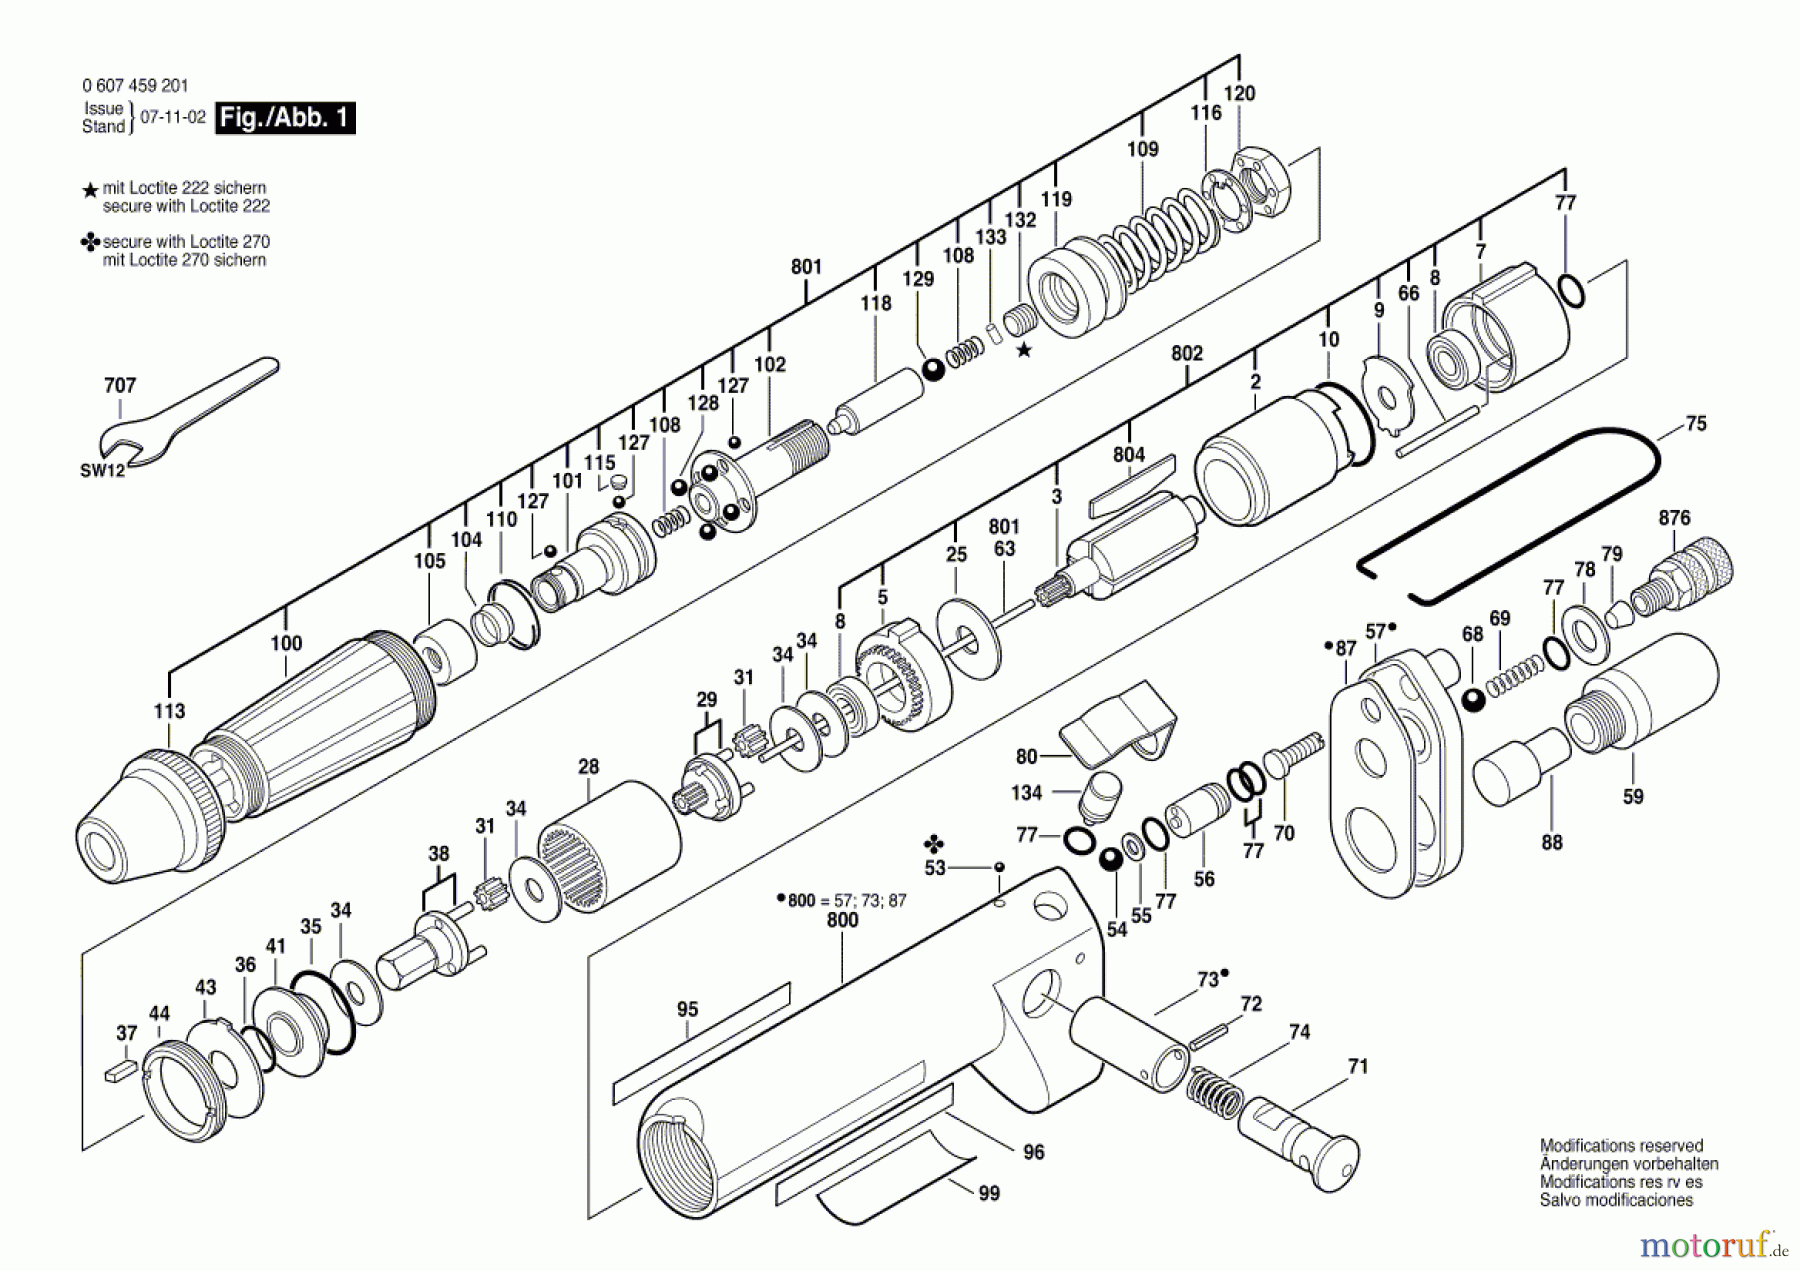  Bosch Werkzeug Pw-Schrauber-Ind 20 WATT-SERIE Seite 1